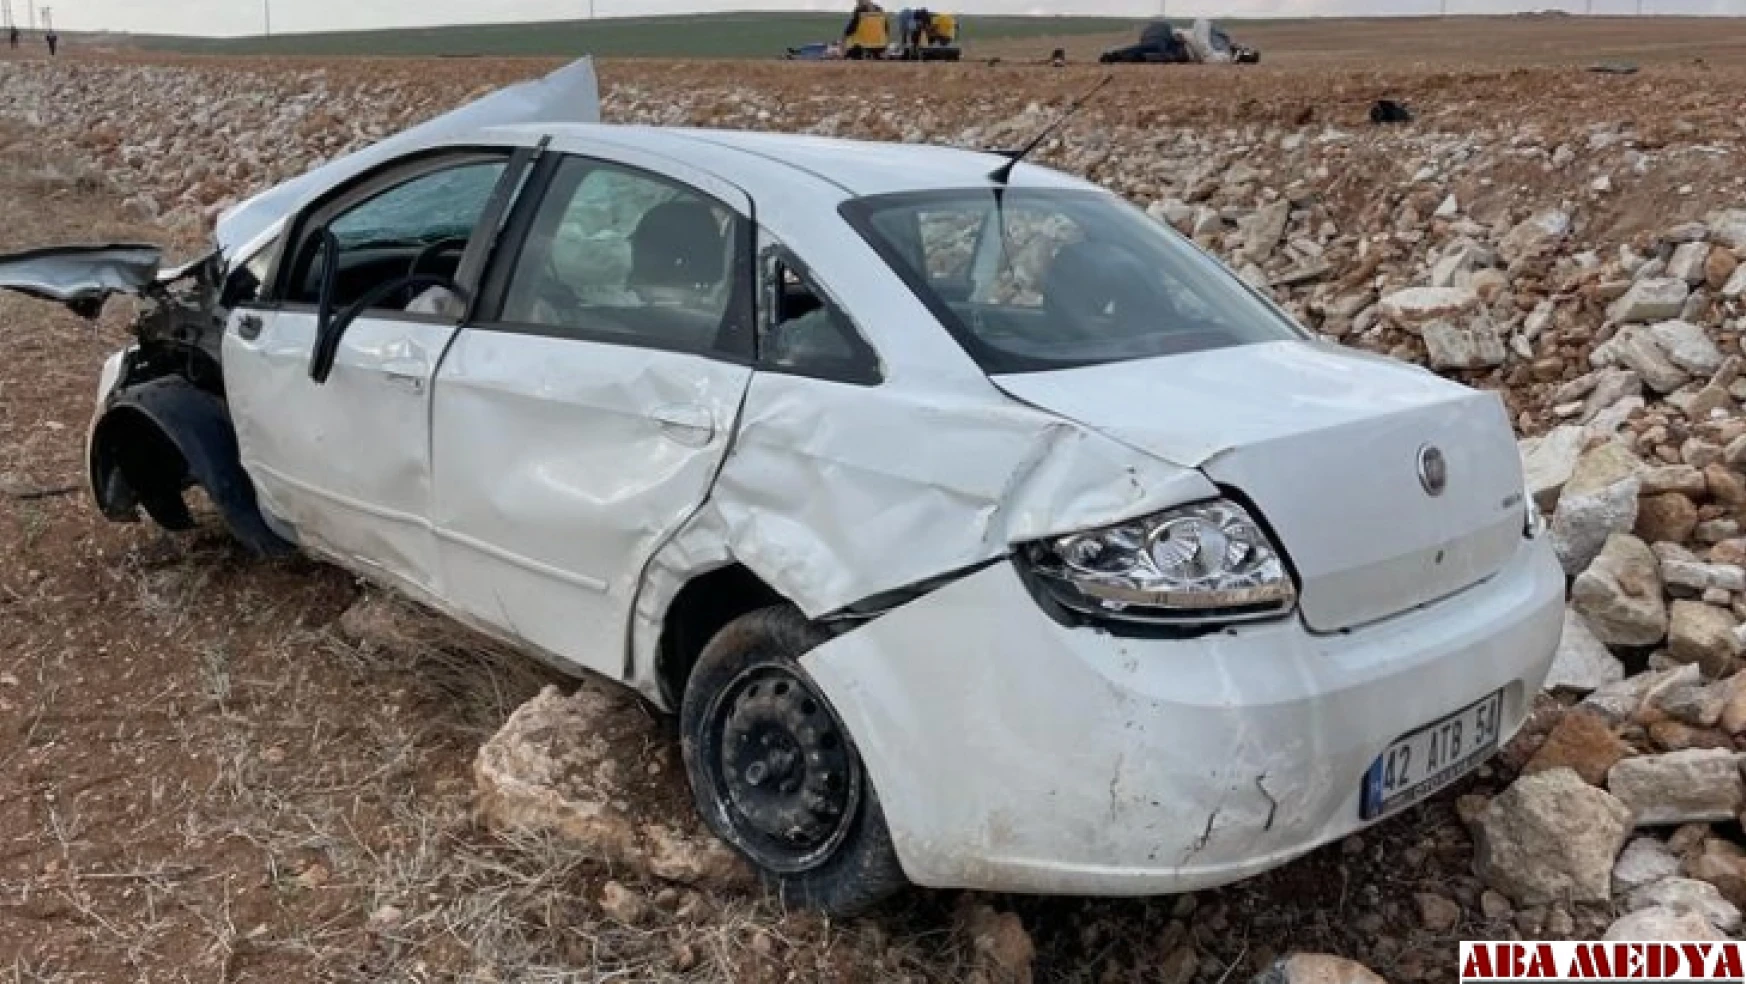 Karaman'da trafik kazası: 2 ölü, 1 yaralı